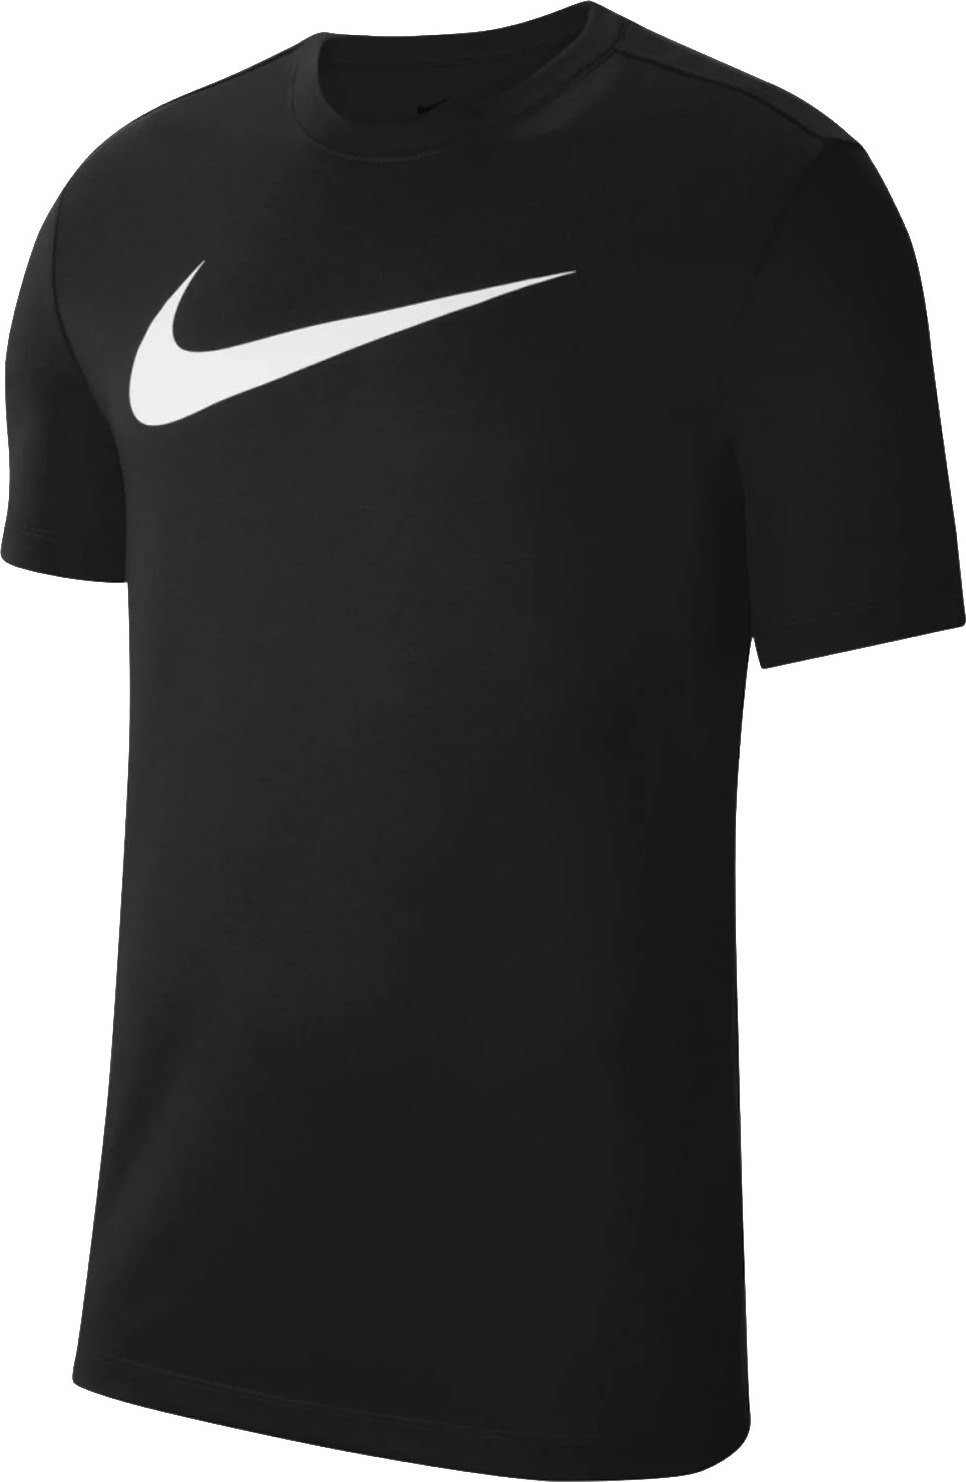 Černé sportovní tričko Nike Dri-FIT Park Tee CW6936-010 Velikost: M